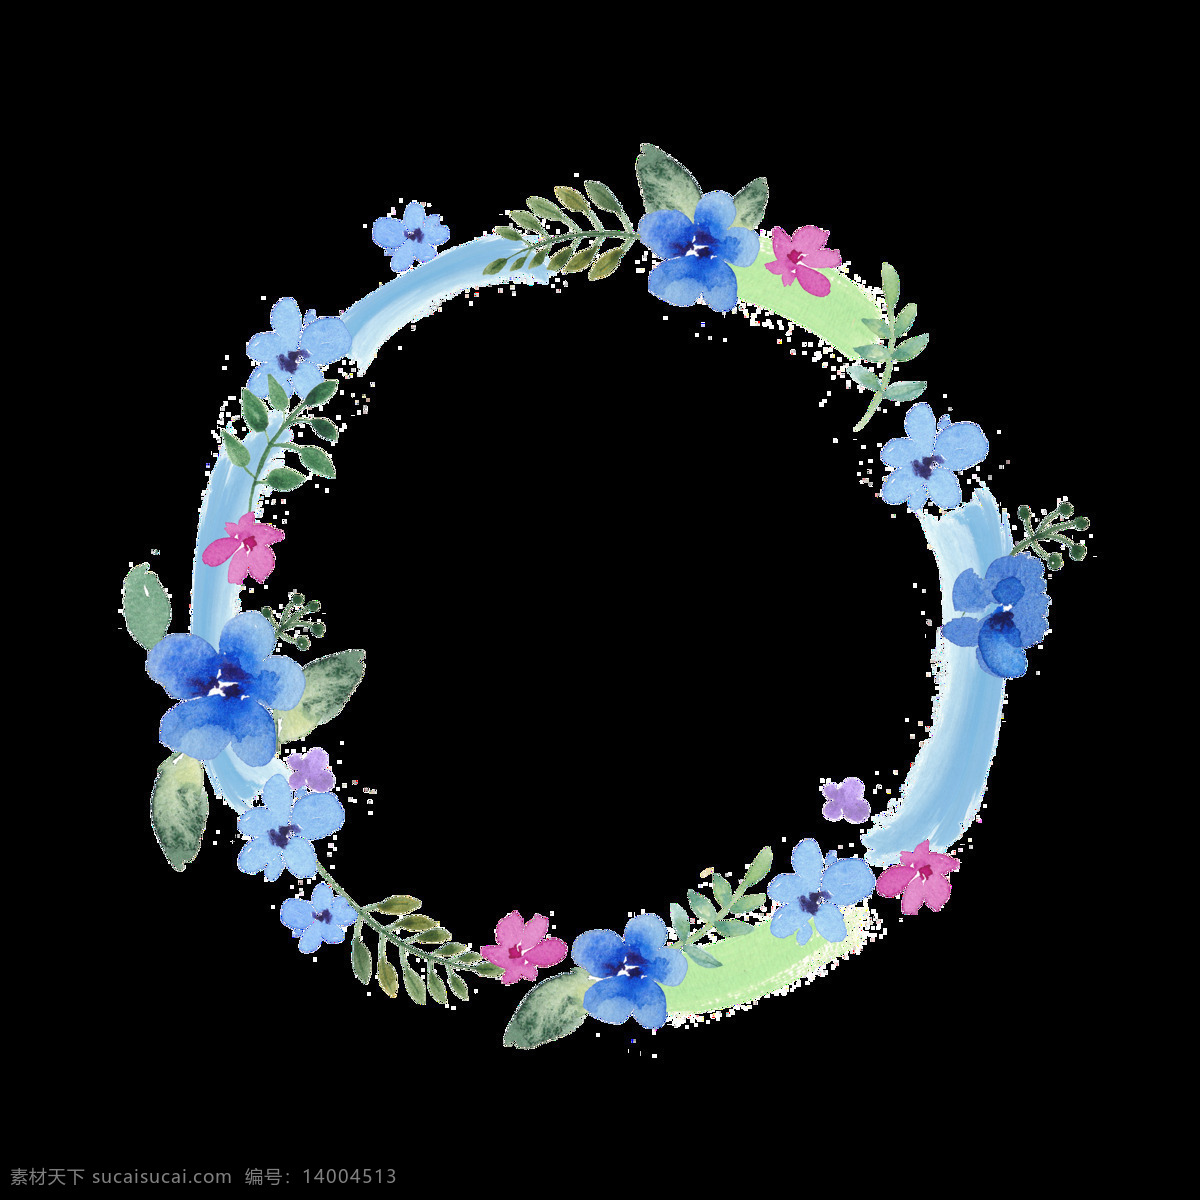 简约 蓝色 小花 手绘 花环 装饰 元素 边框 春天 淡雅 绿叶 手绘小清新 圆形